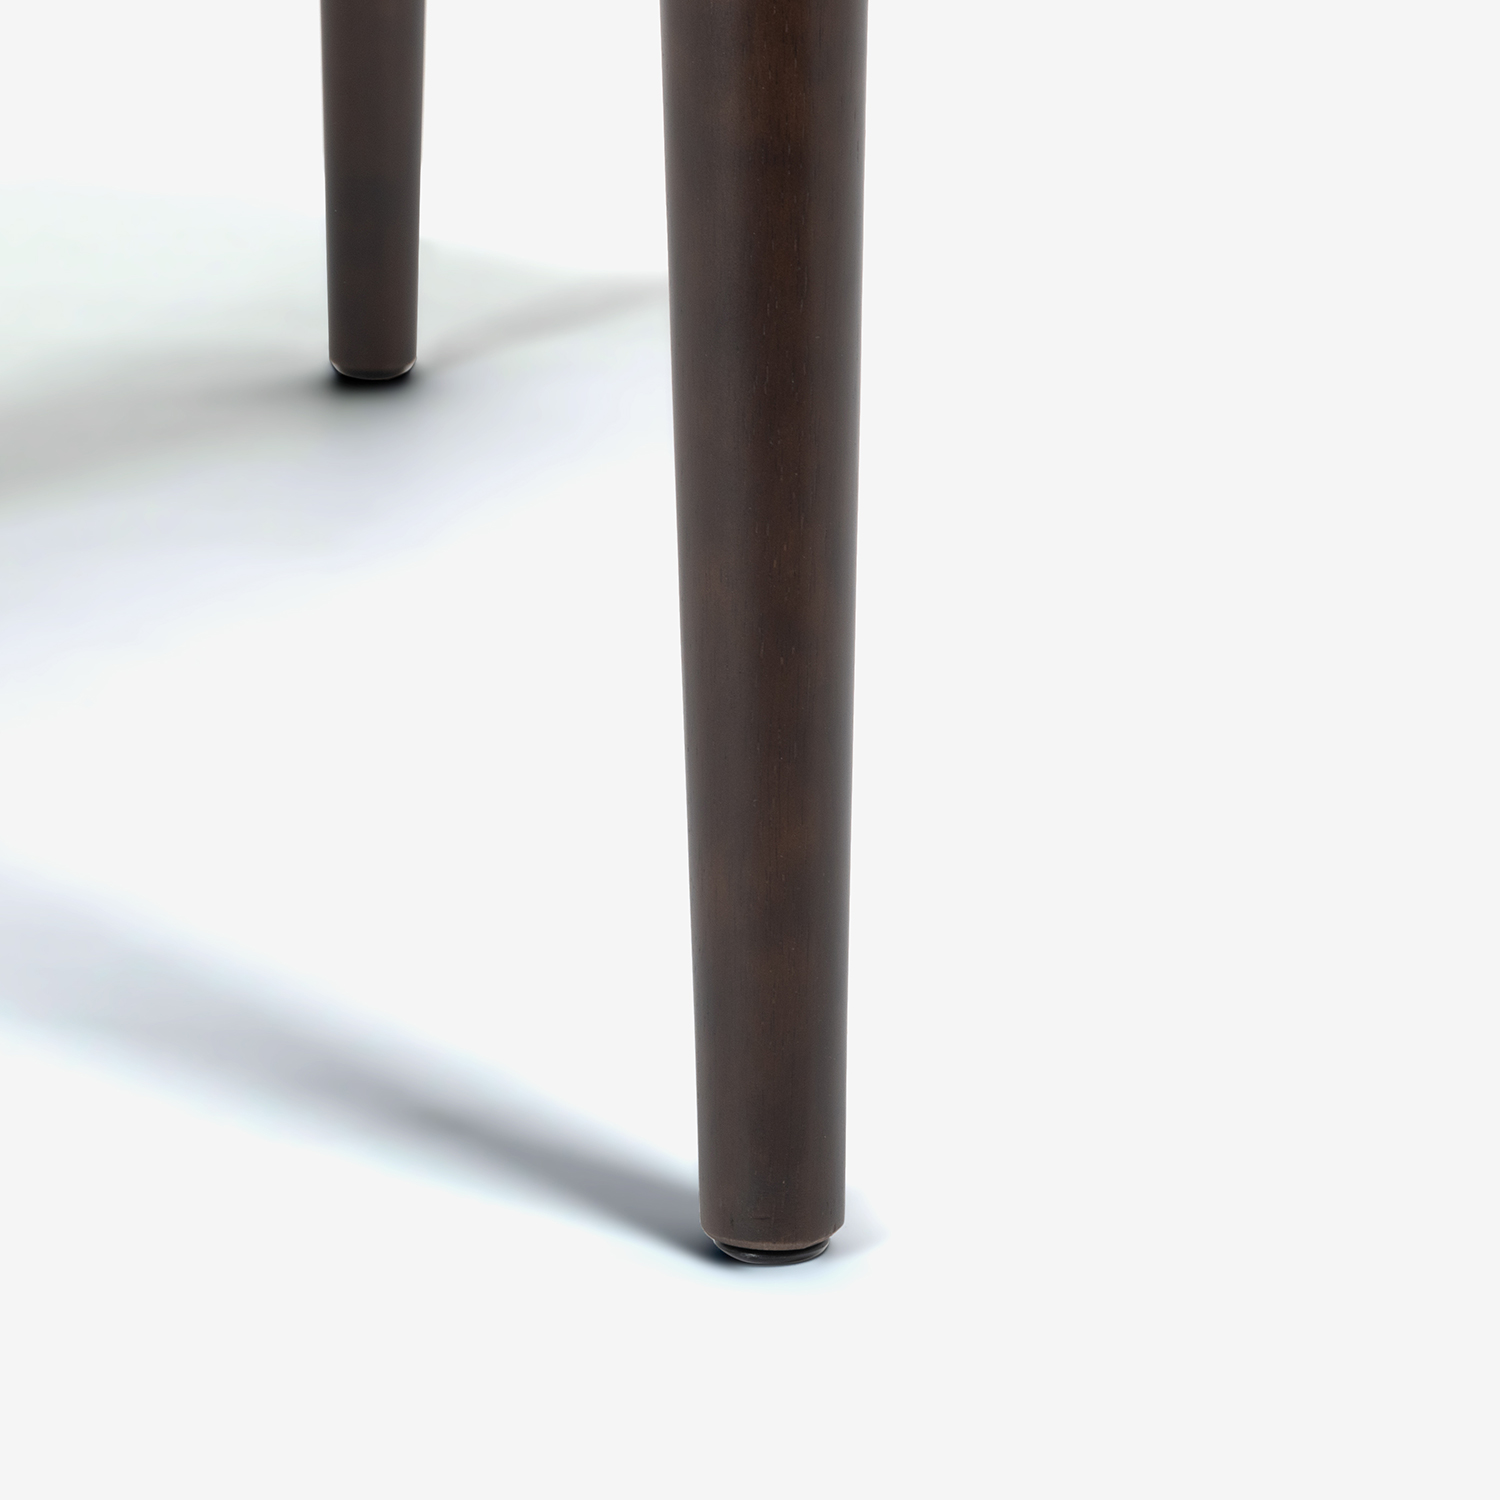 ダイニングテーブル「ユノ3」幅80cm レッドオーク材 ダークブラウン色 丸脚